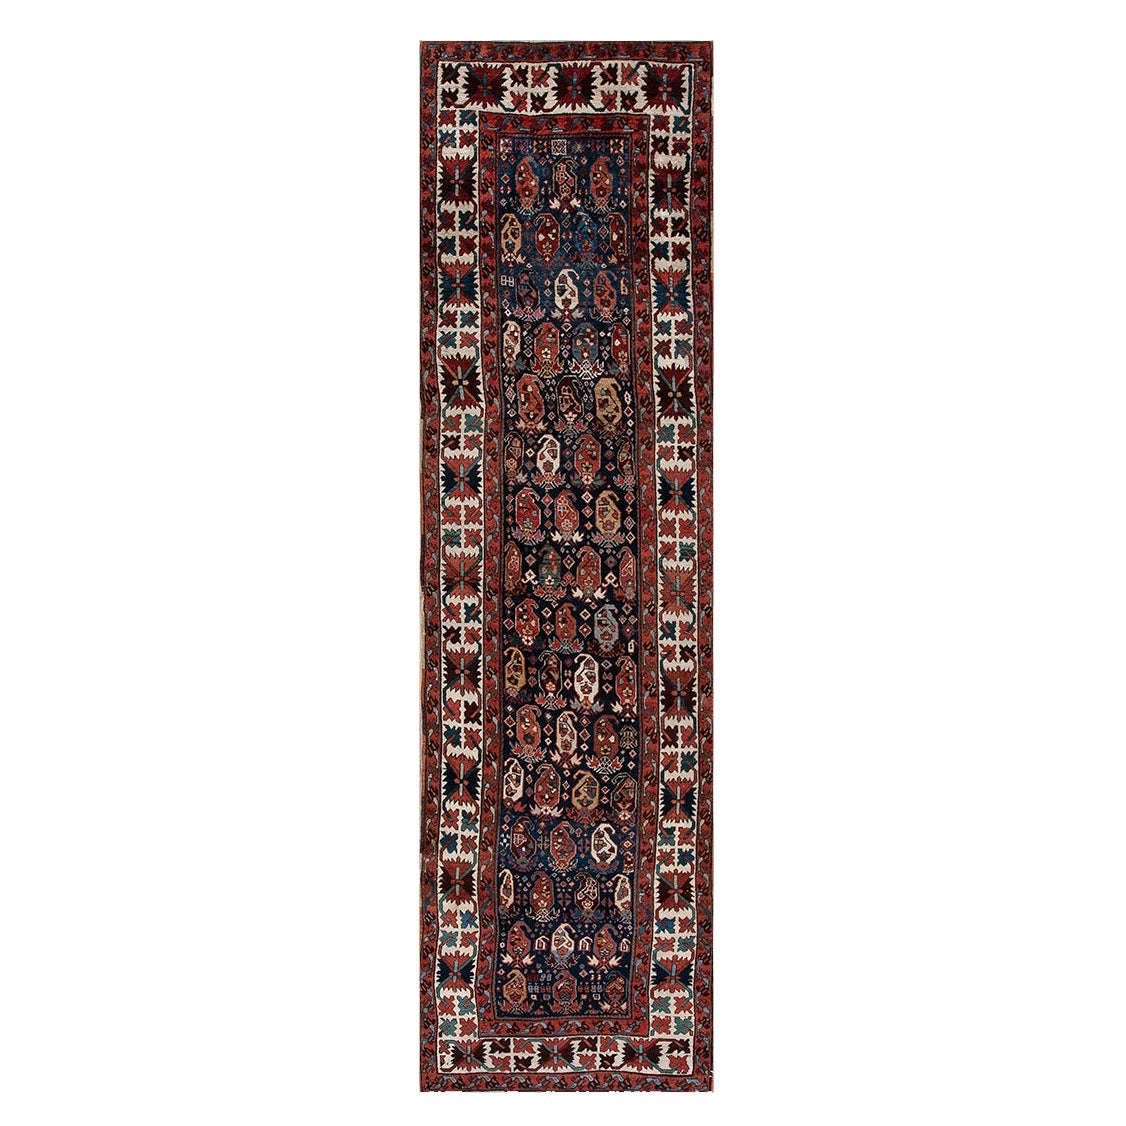 19th Century Caucasian Kazak Carpet ( 3'2" x 10'10" - 97 x 330 )